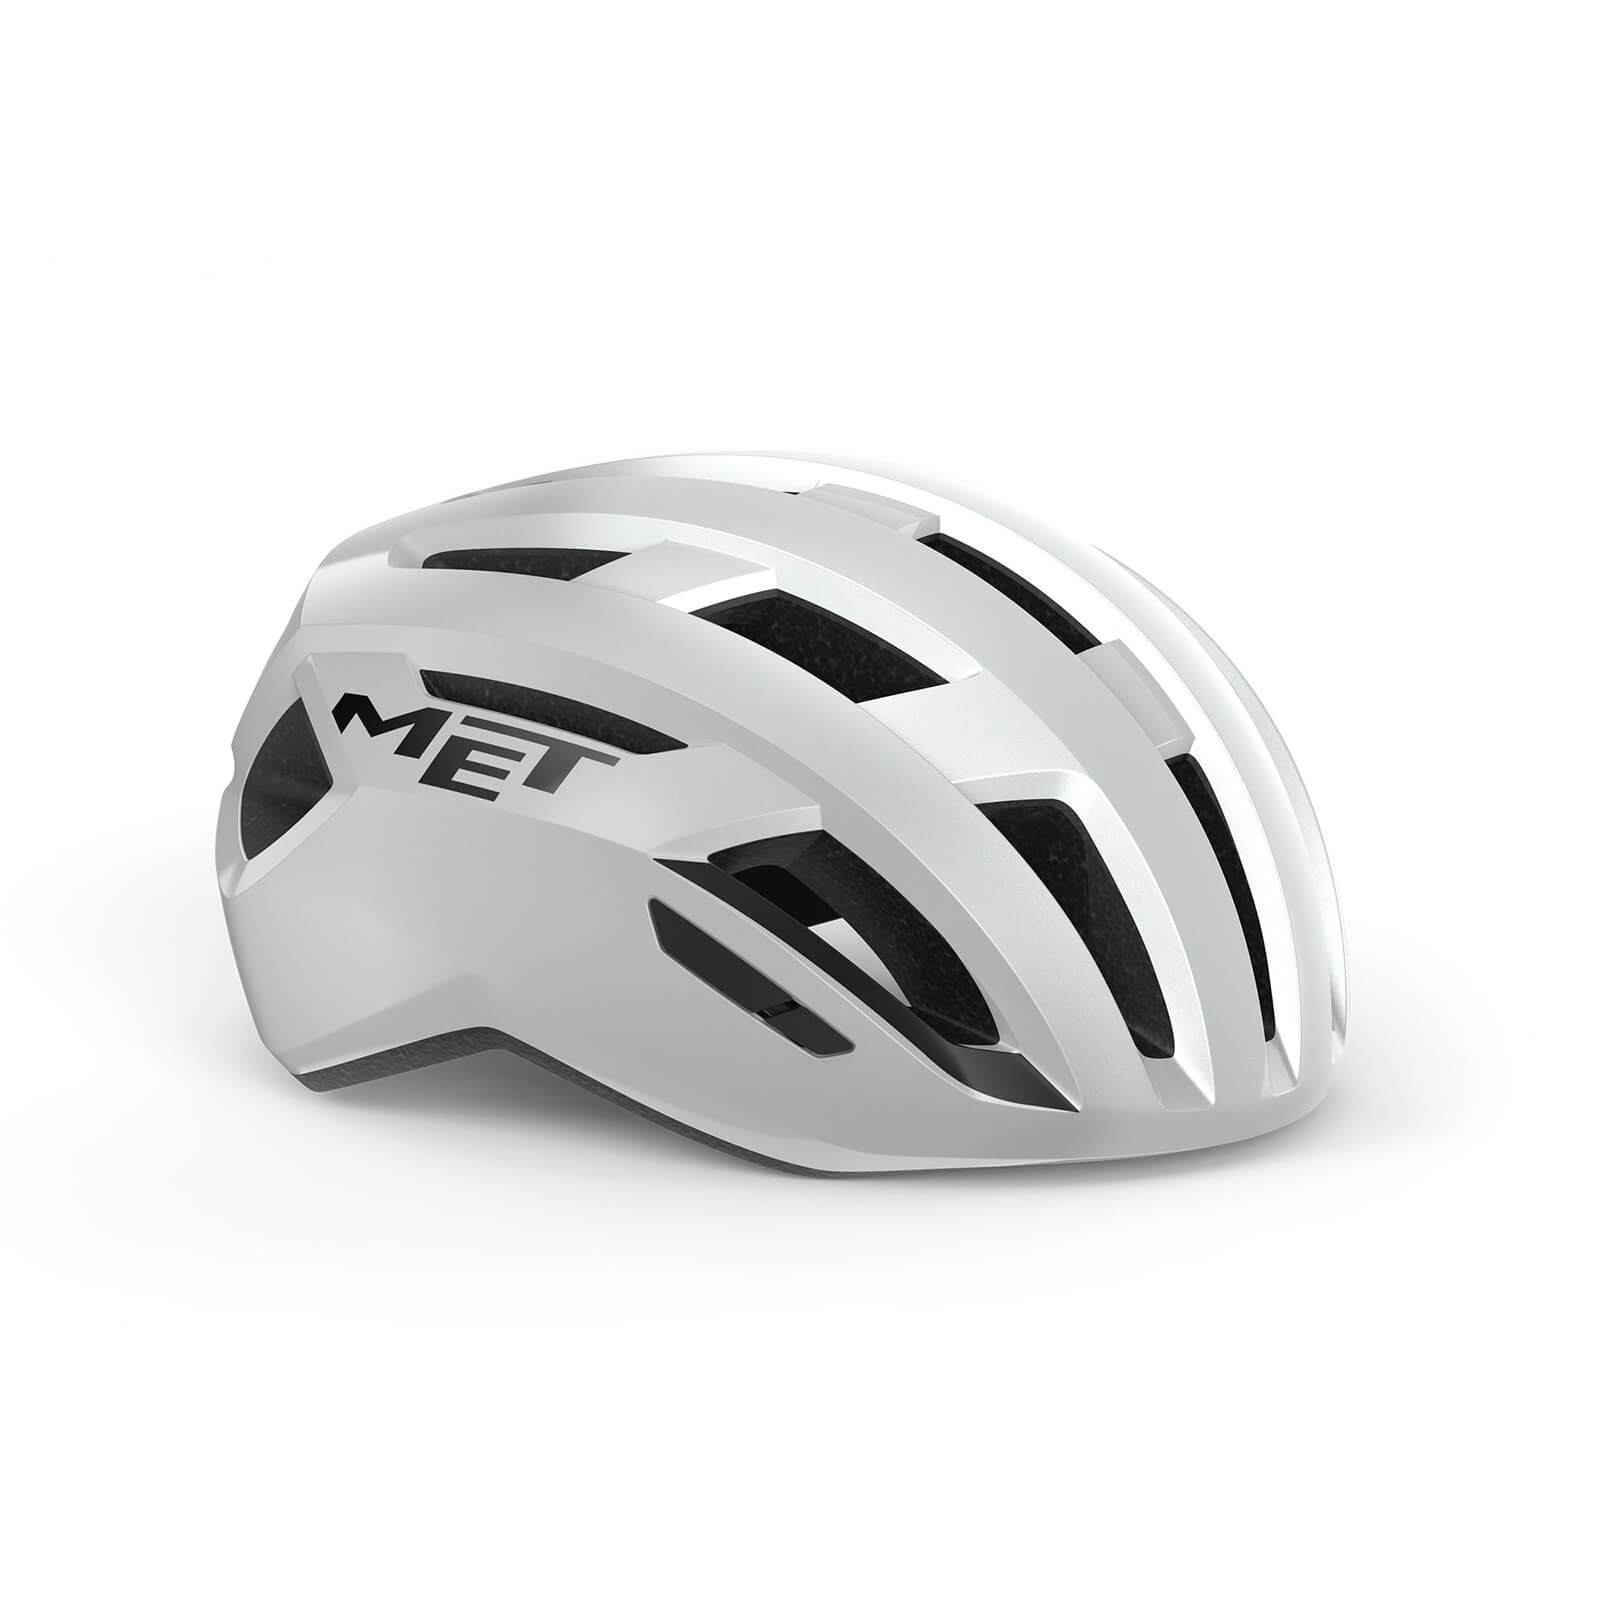 MET Vinci MIPS Road Helmet - L - White/Silver